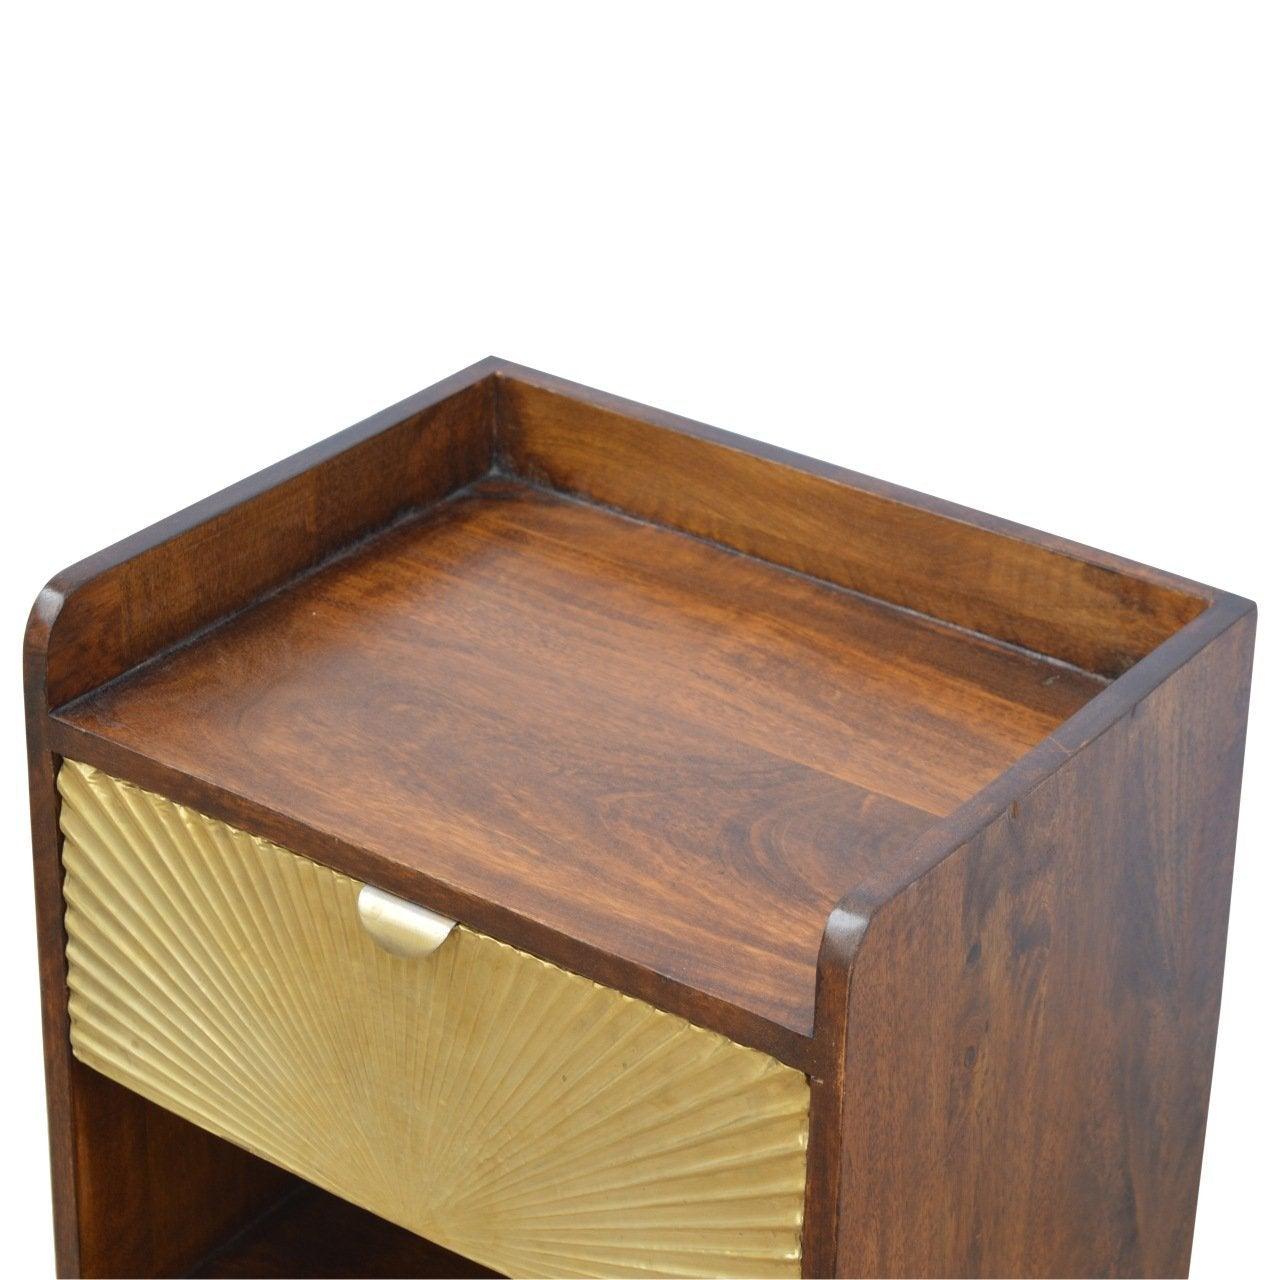 Manila gold 1 drawer bedside table - crimblefest furniture - image 5